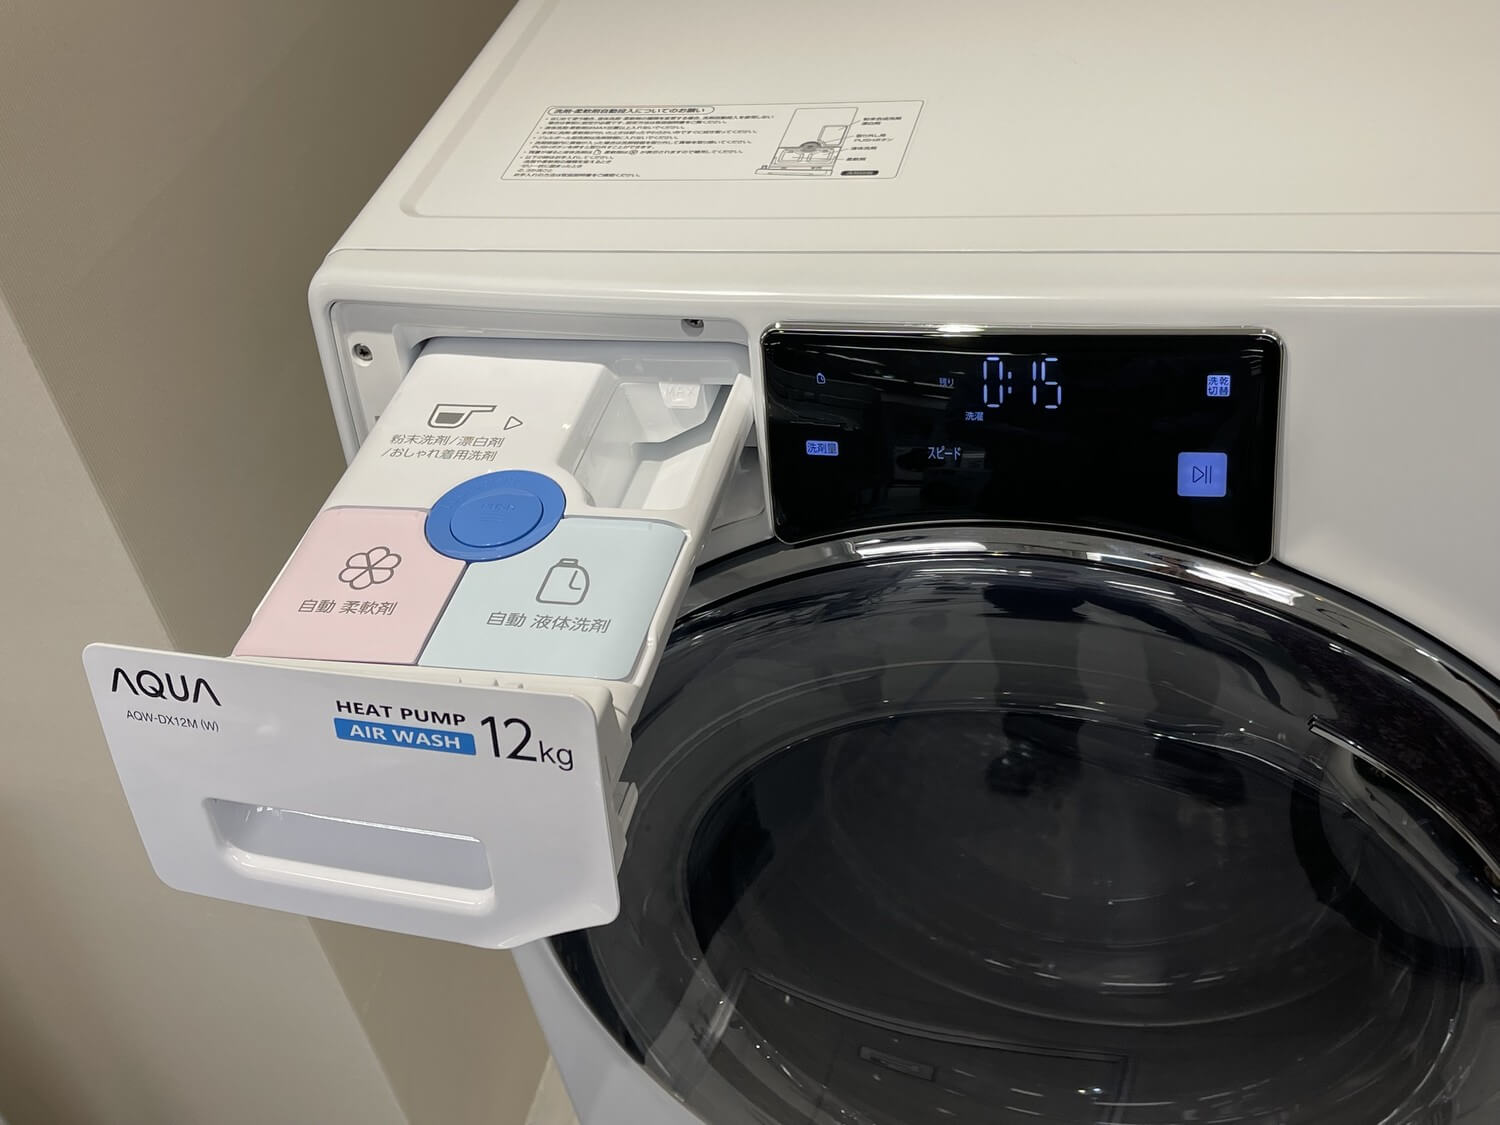 生活家電 洗濯機 発売が待ち遠しい！ 清潔＆便利機能満載、アクアのコンパクト大容量 